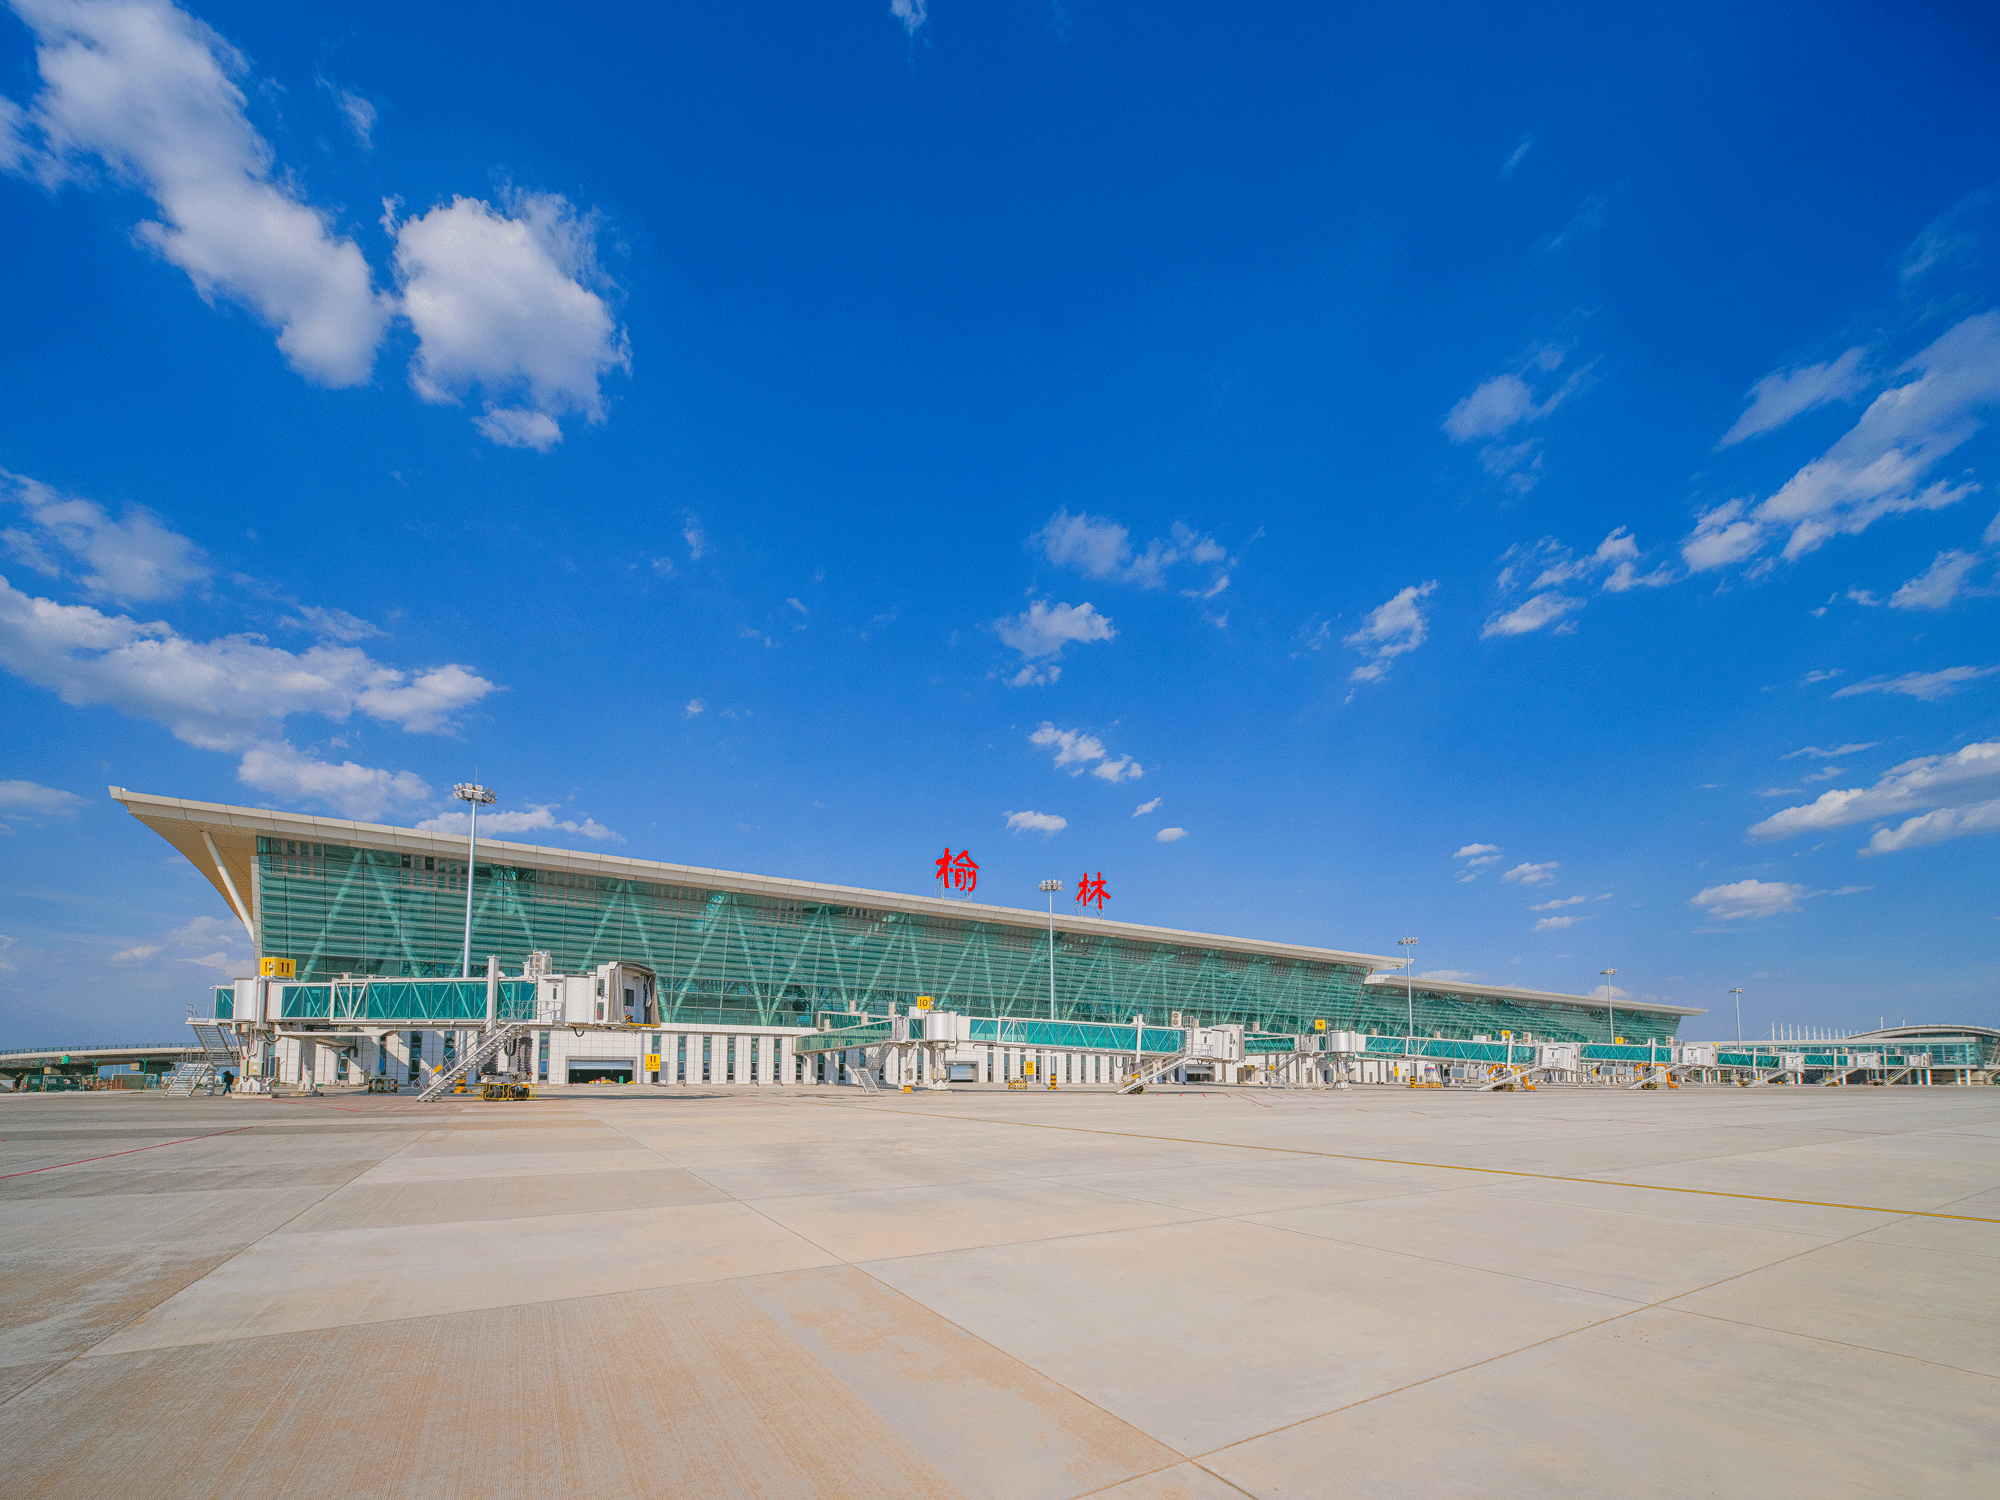 而榆林榆阳机场作为国内支线机场,是陕西省第二大航空港,位于榆林城